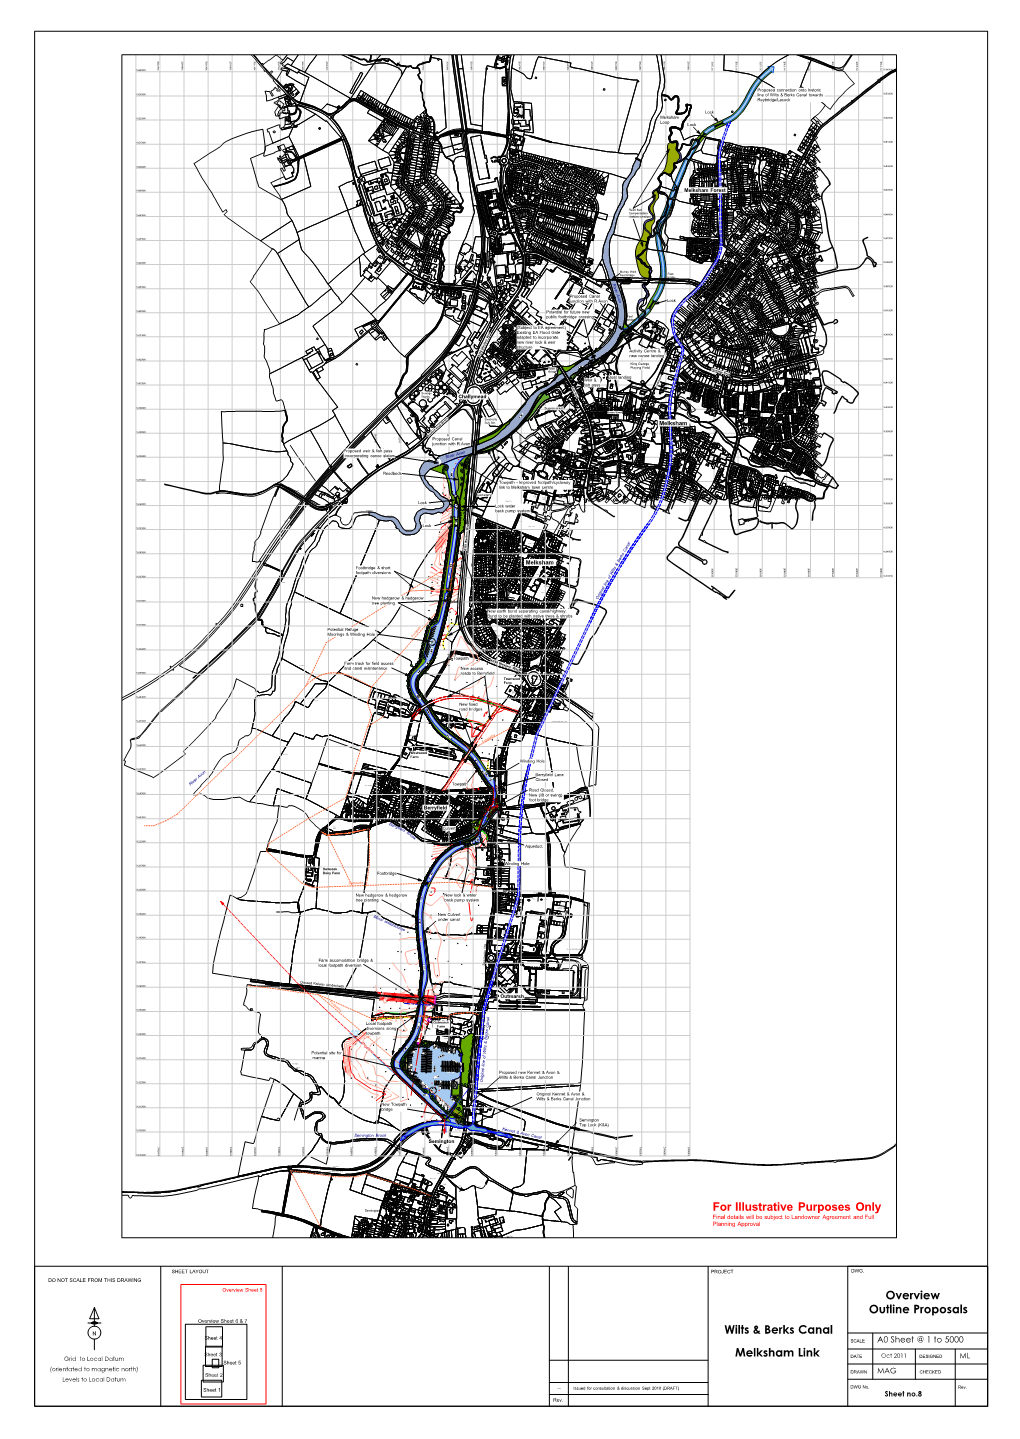 Overview Outline Proposals Melksham Link Wilts & Berks Canal